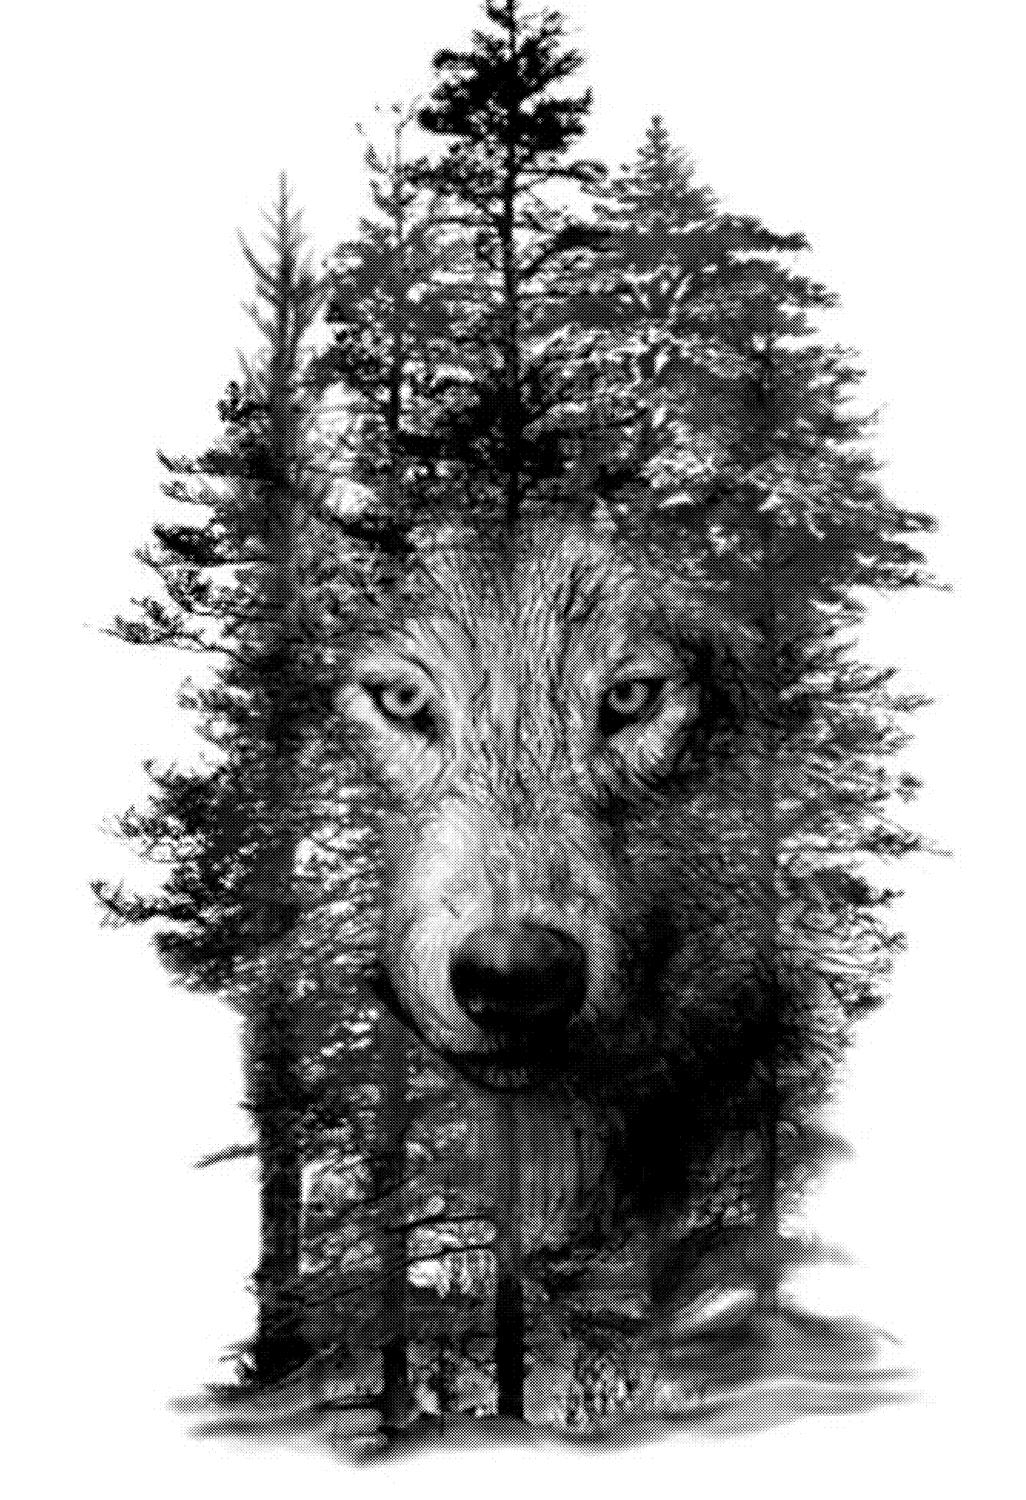 狼在树激光雕刻模板